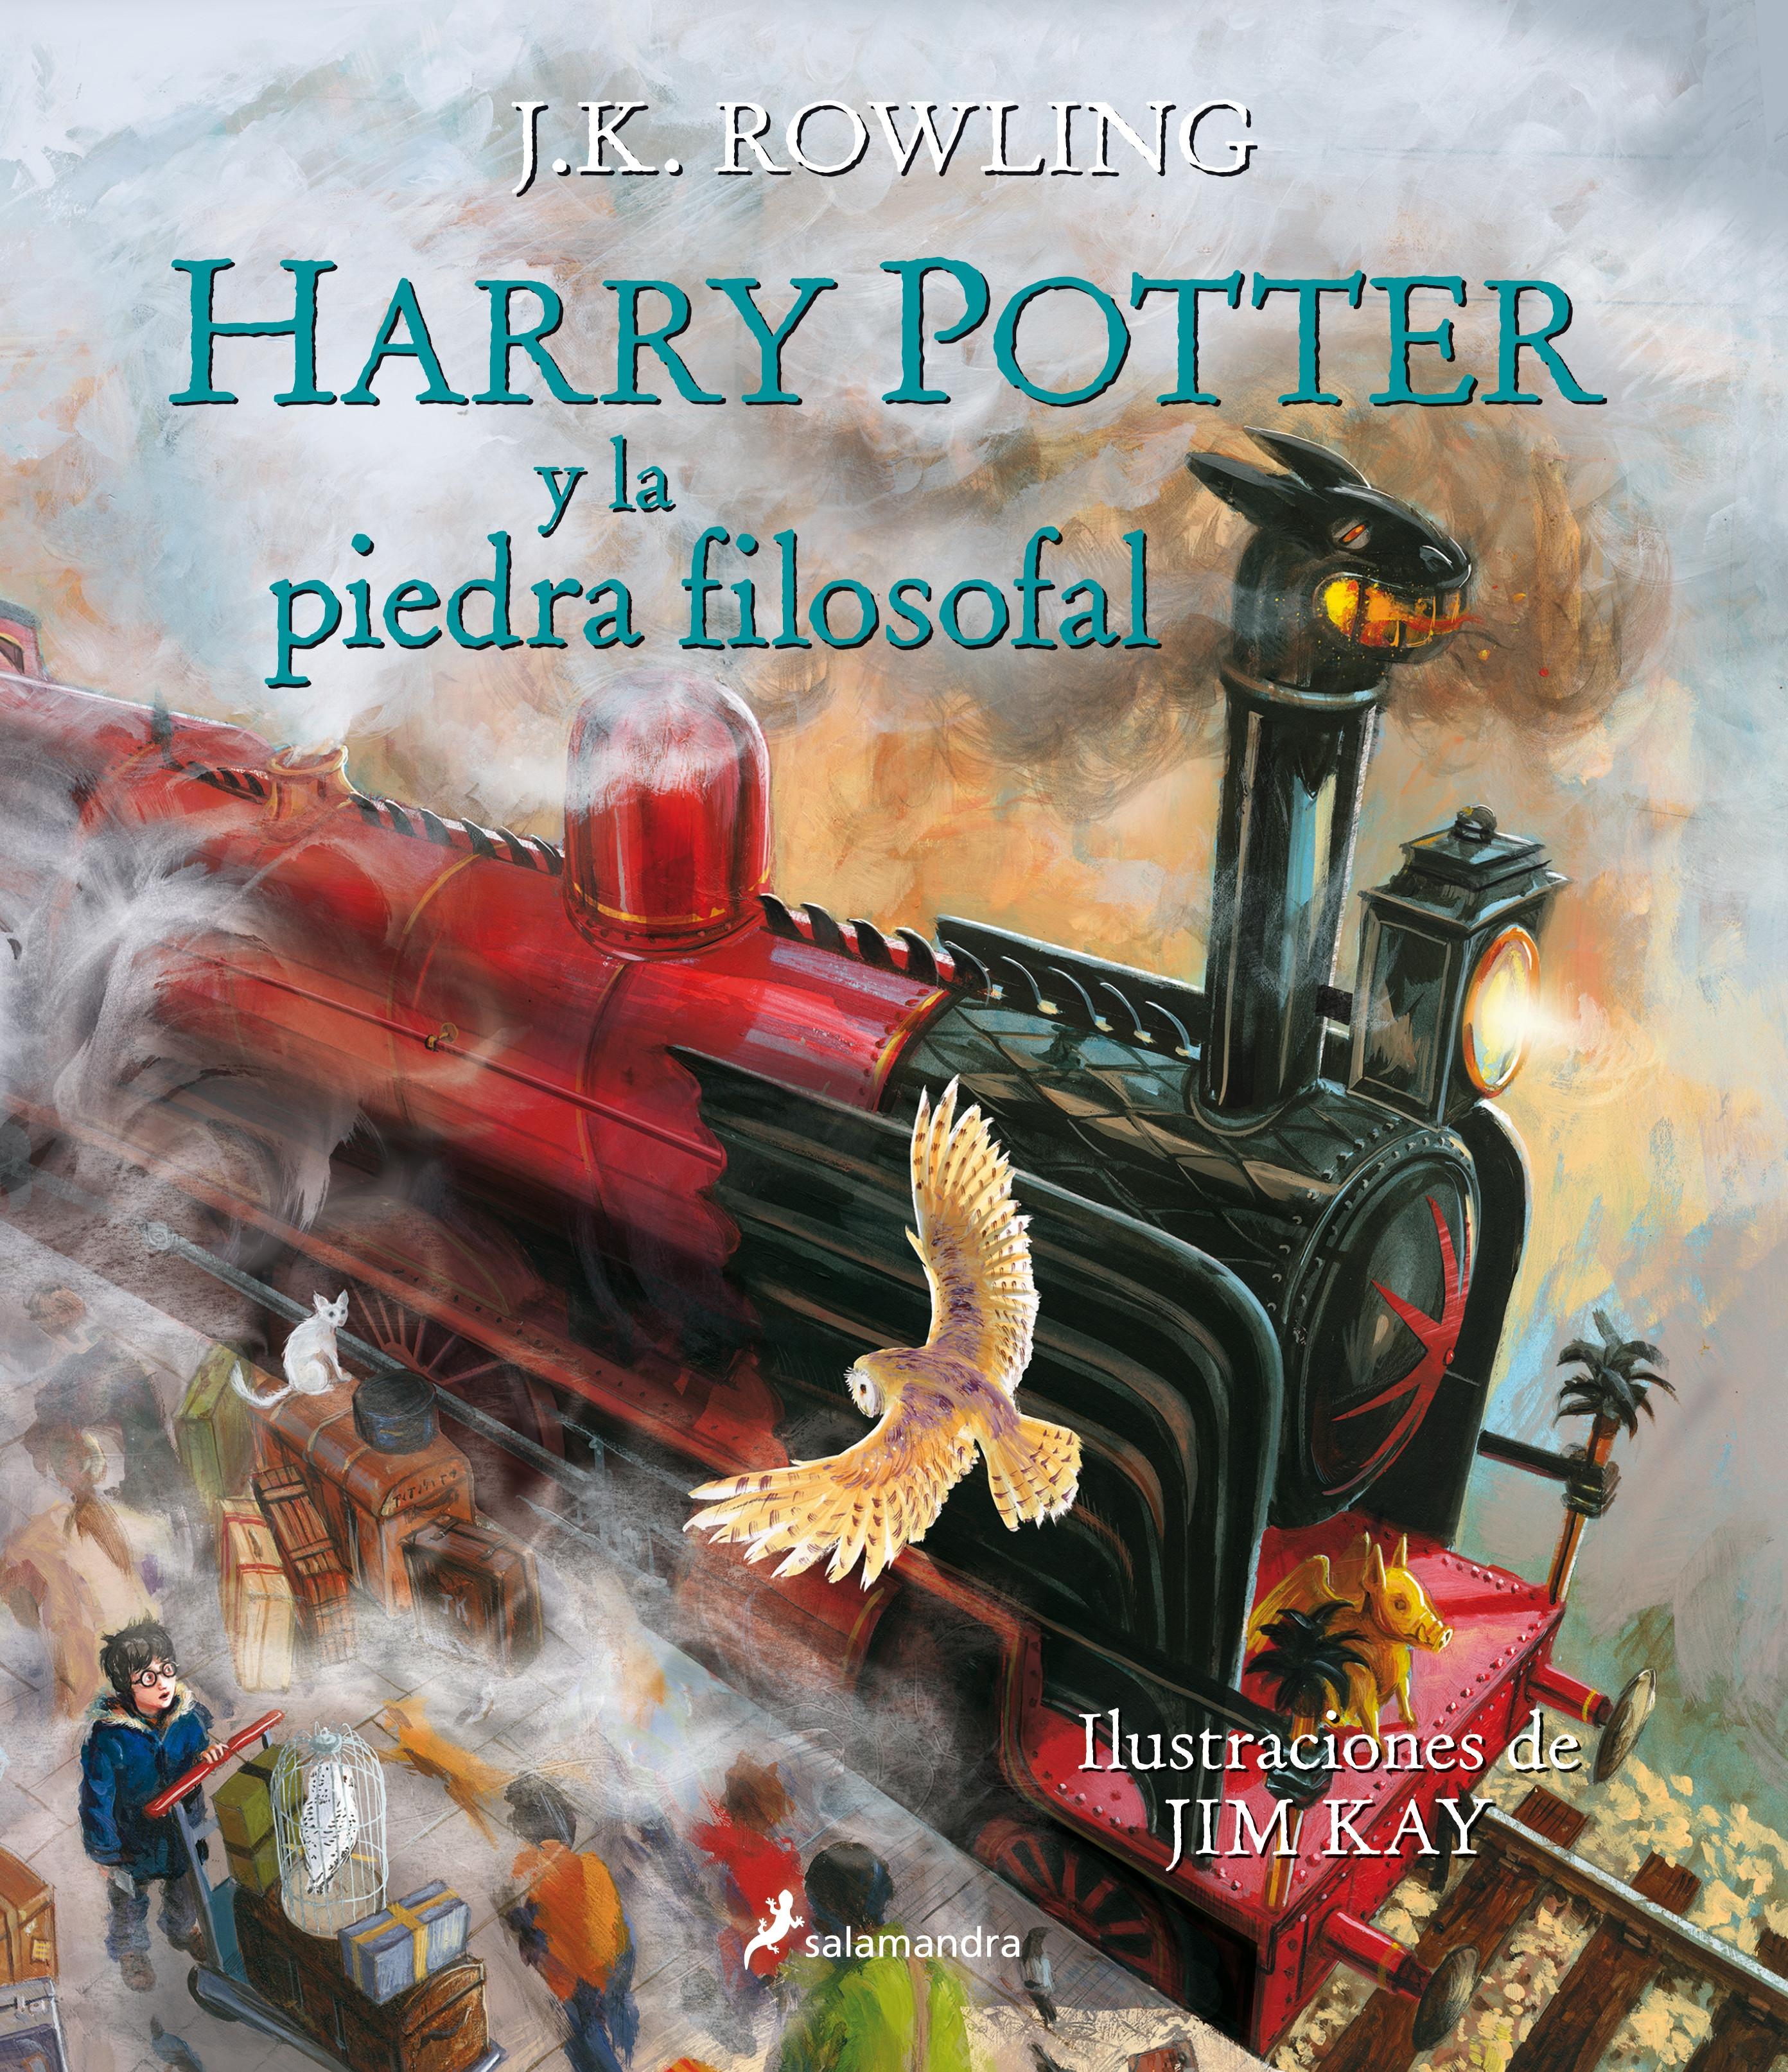 Harry Potter y la piedra filosofal "(Harry Potter - 1) (Edición ilustrada. Rústica)"